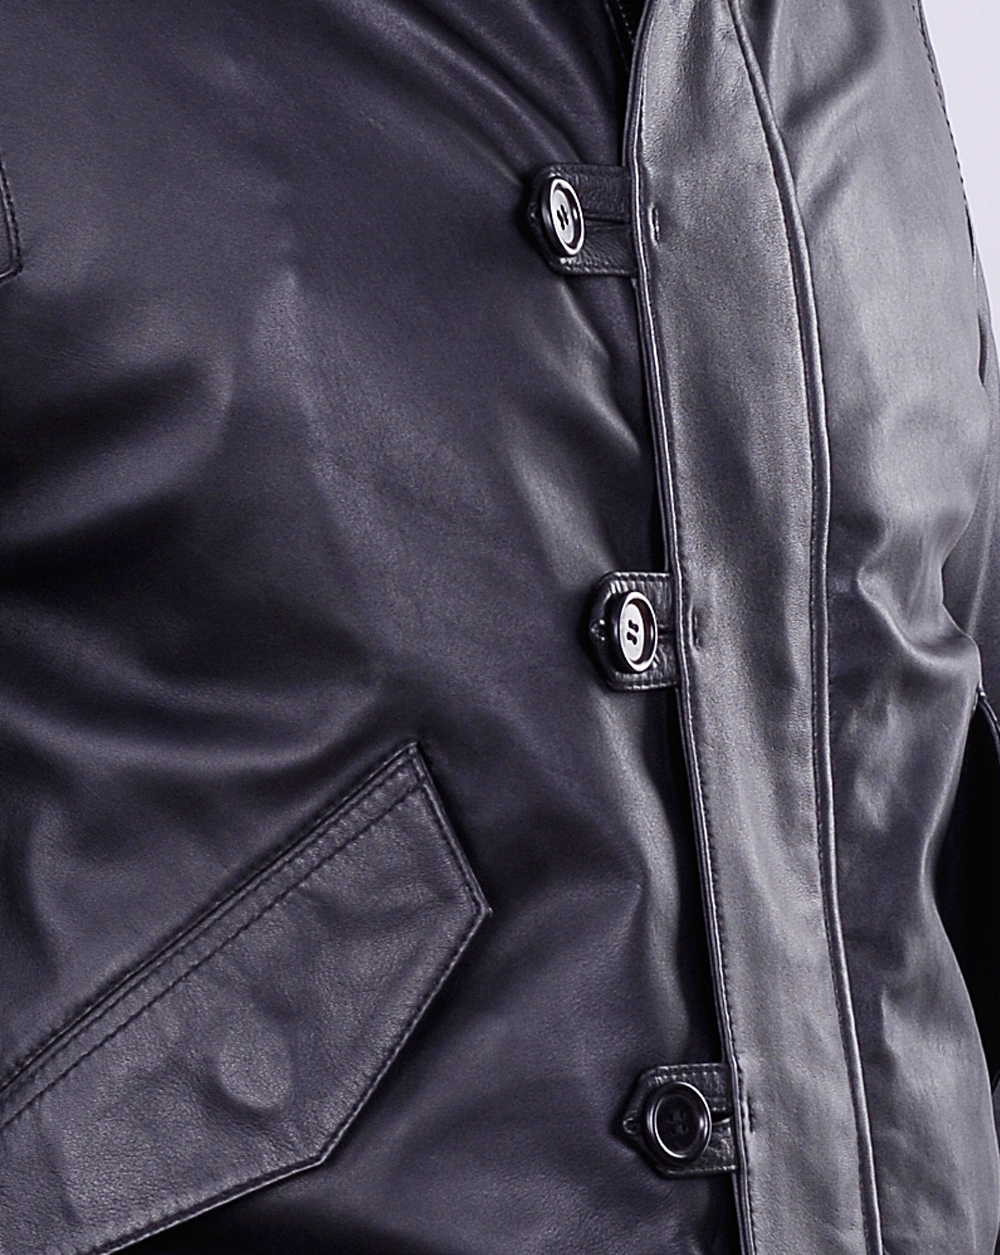 Kane Elegant leather jacket